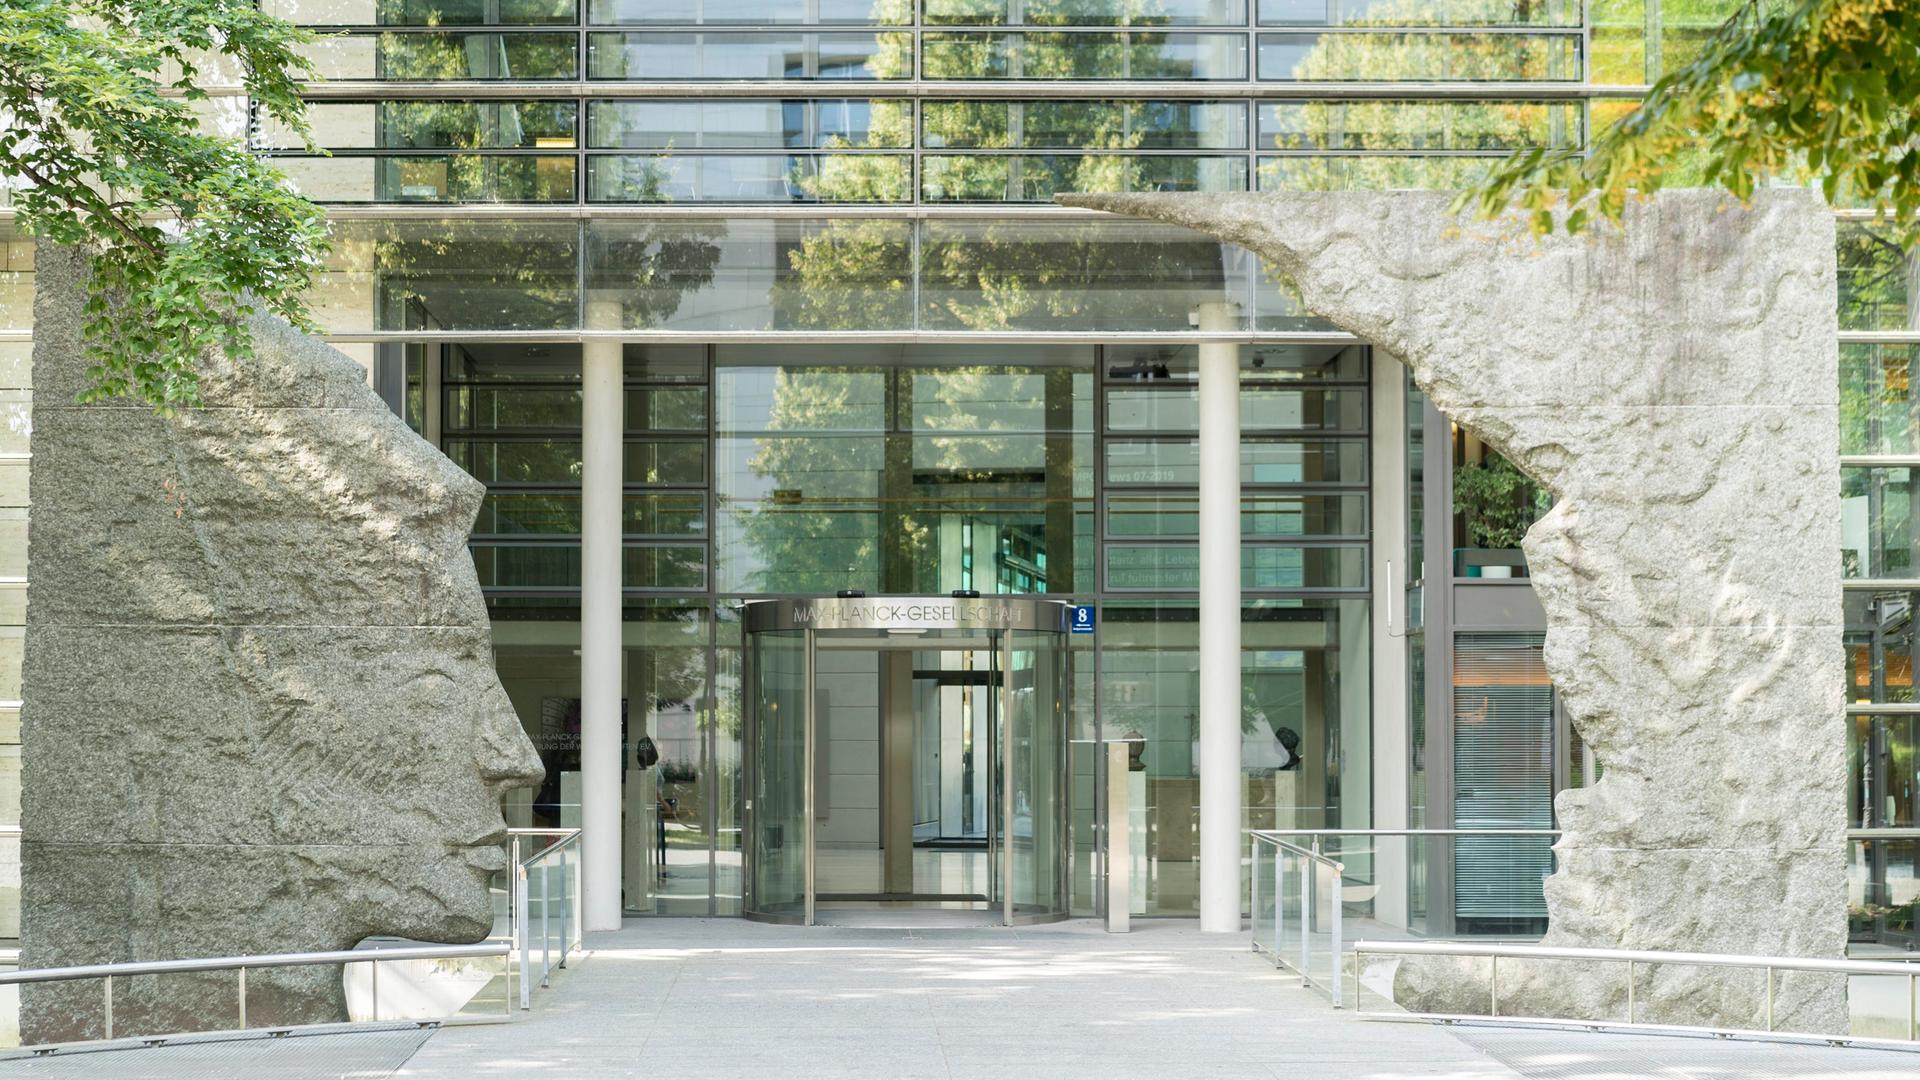 Blick auf den Eingang der Max-Planck-Gesellschaft in München, einem Glasgebäude welches am Eingang von zwei Skulpturen umrahmt wird